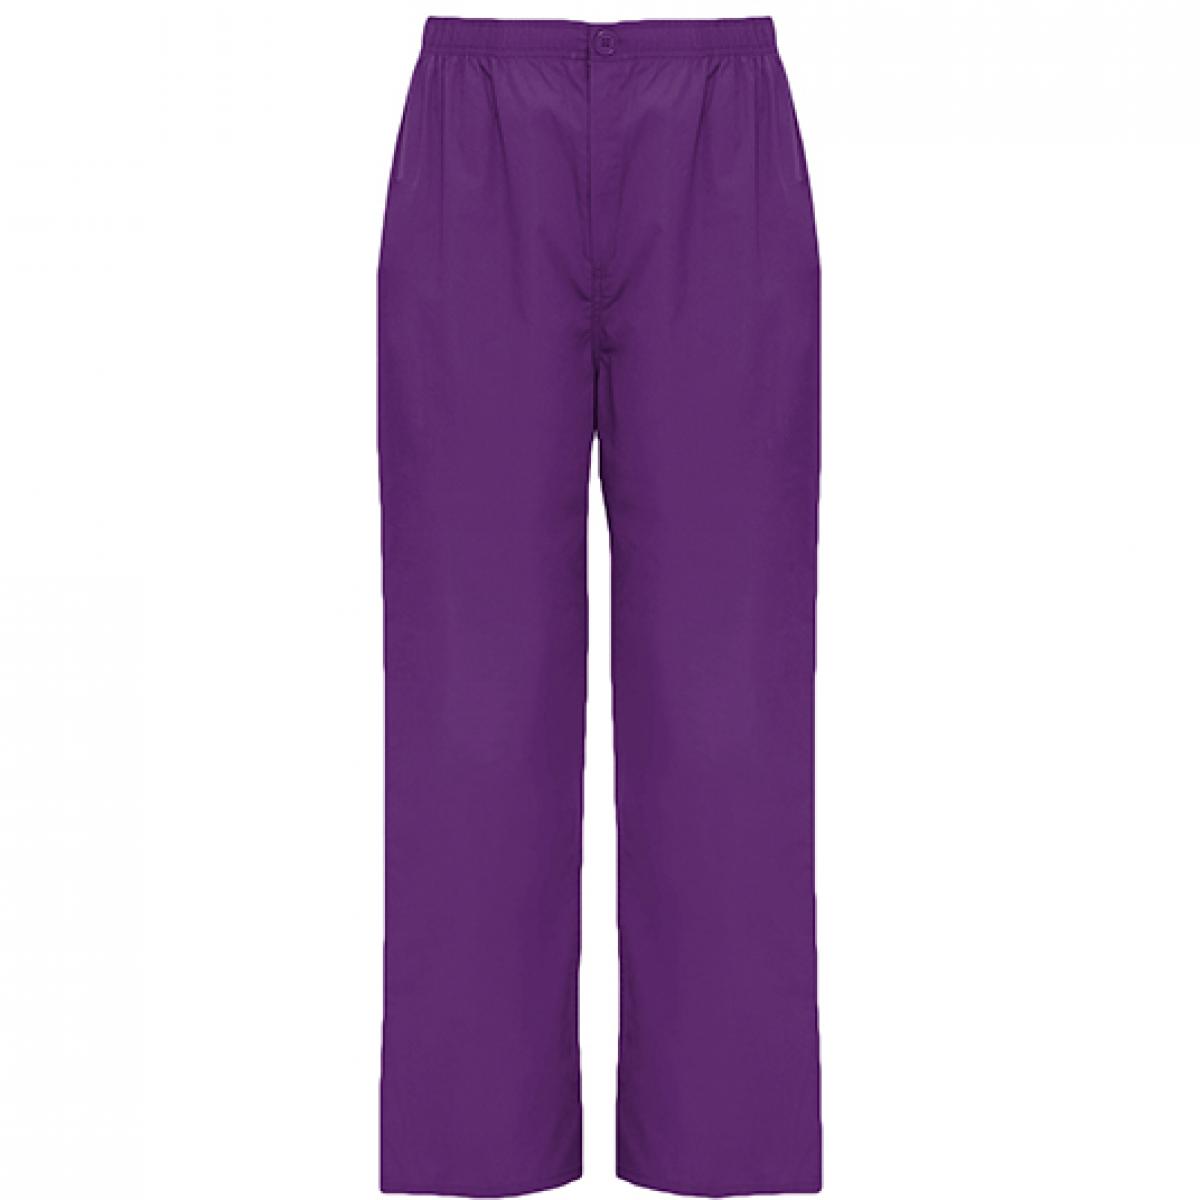 Hersteller: Roly Workwear Herstellernummer: PA9097 Artikelbezeichnung: Vademecum Pull on trousers - Pfegerhose Farbe: Grape 988